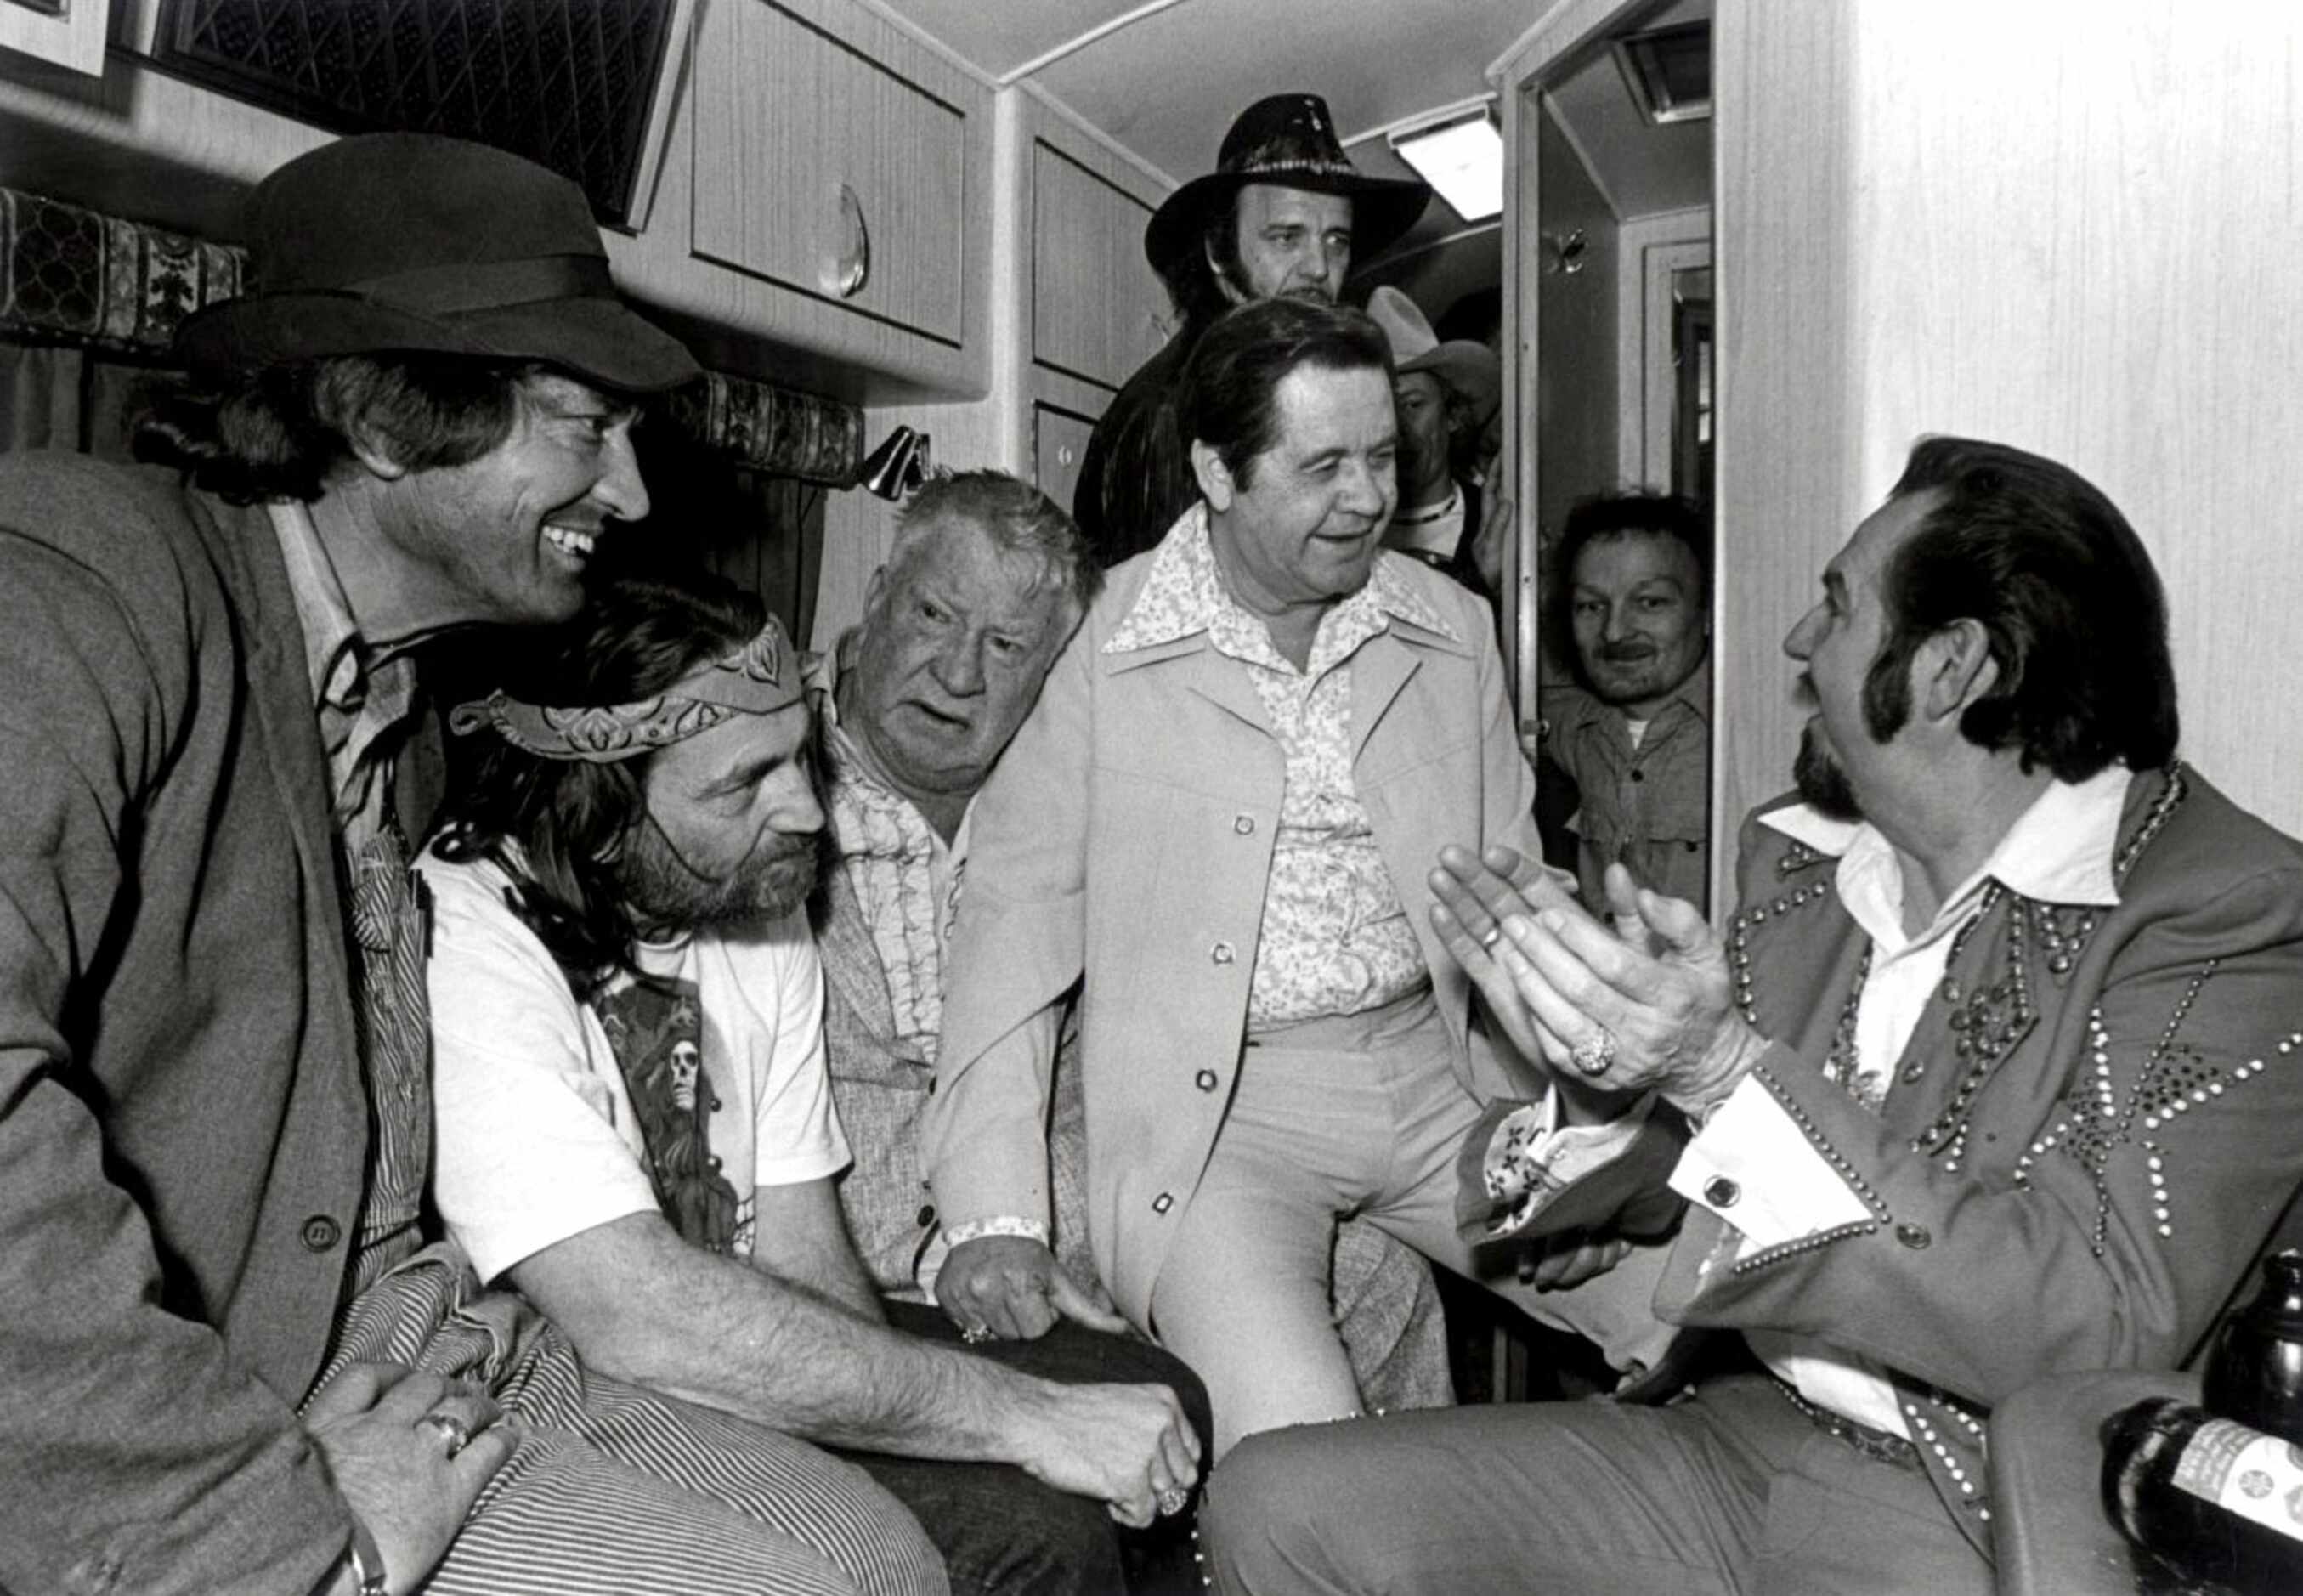 1974 - Ron McKeown was in Willie Nelson's Winnebago behind the Longhorn Ballroom in Dallas,...